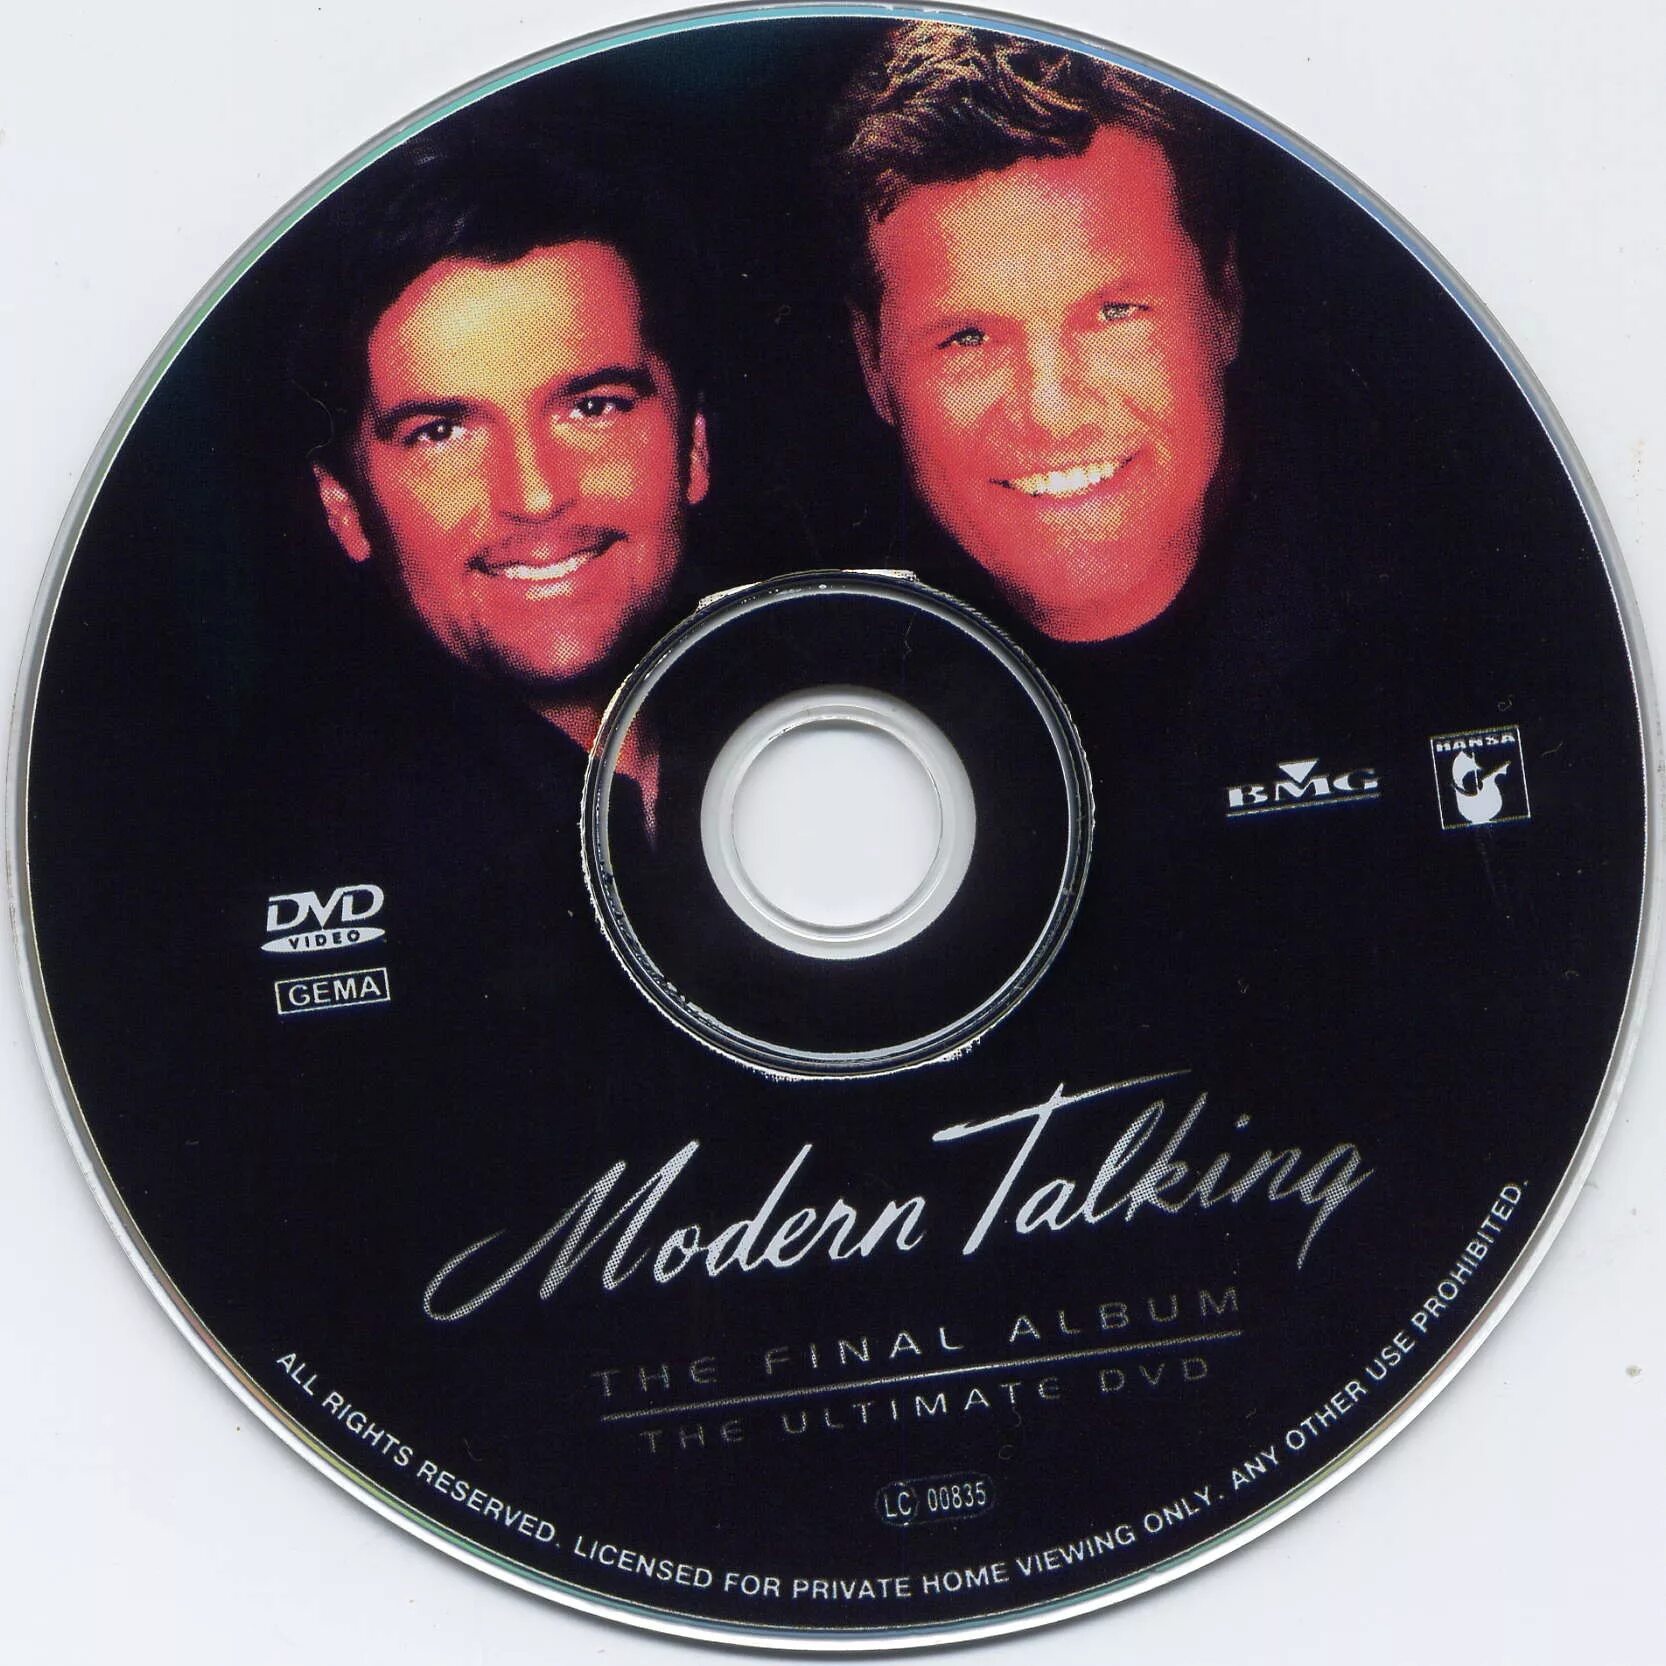 Группа Modern talking 2003. Диск DVD Modern talking. The Final album Modern talking. Modern talking СД.